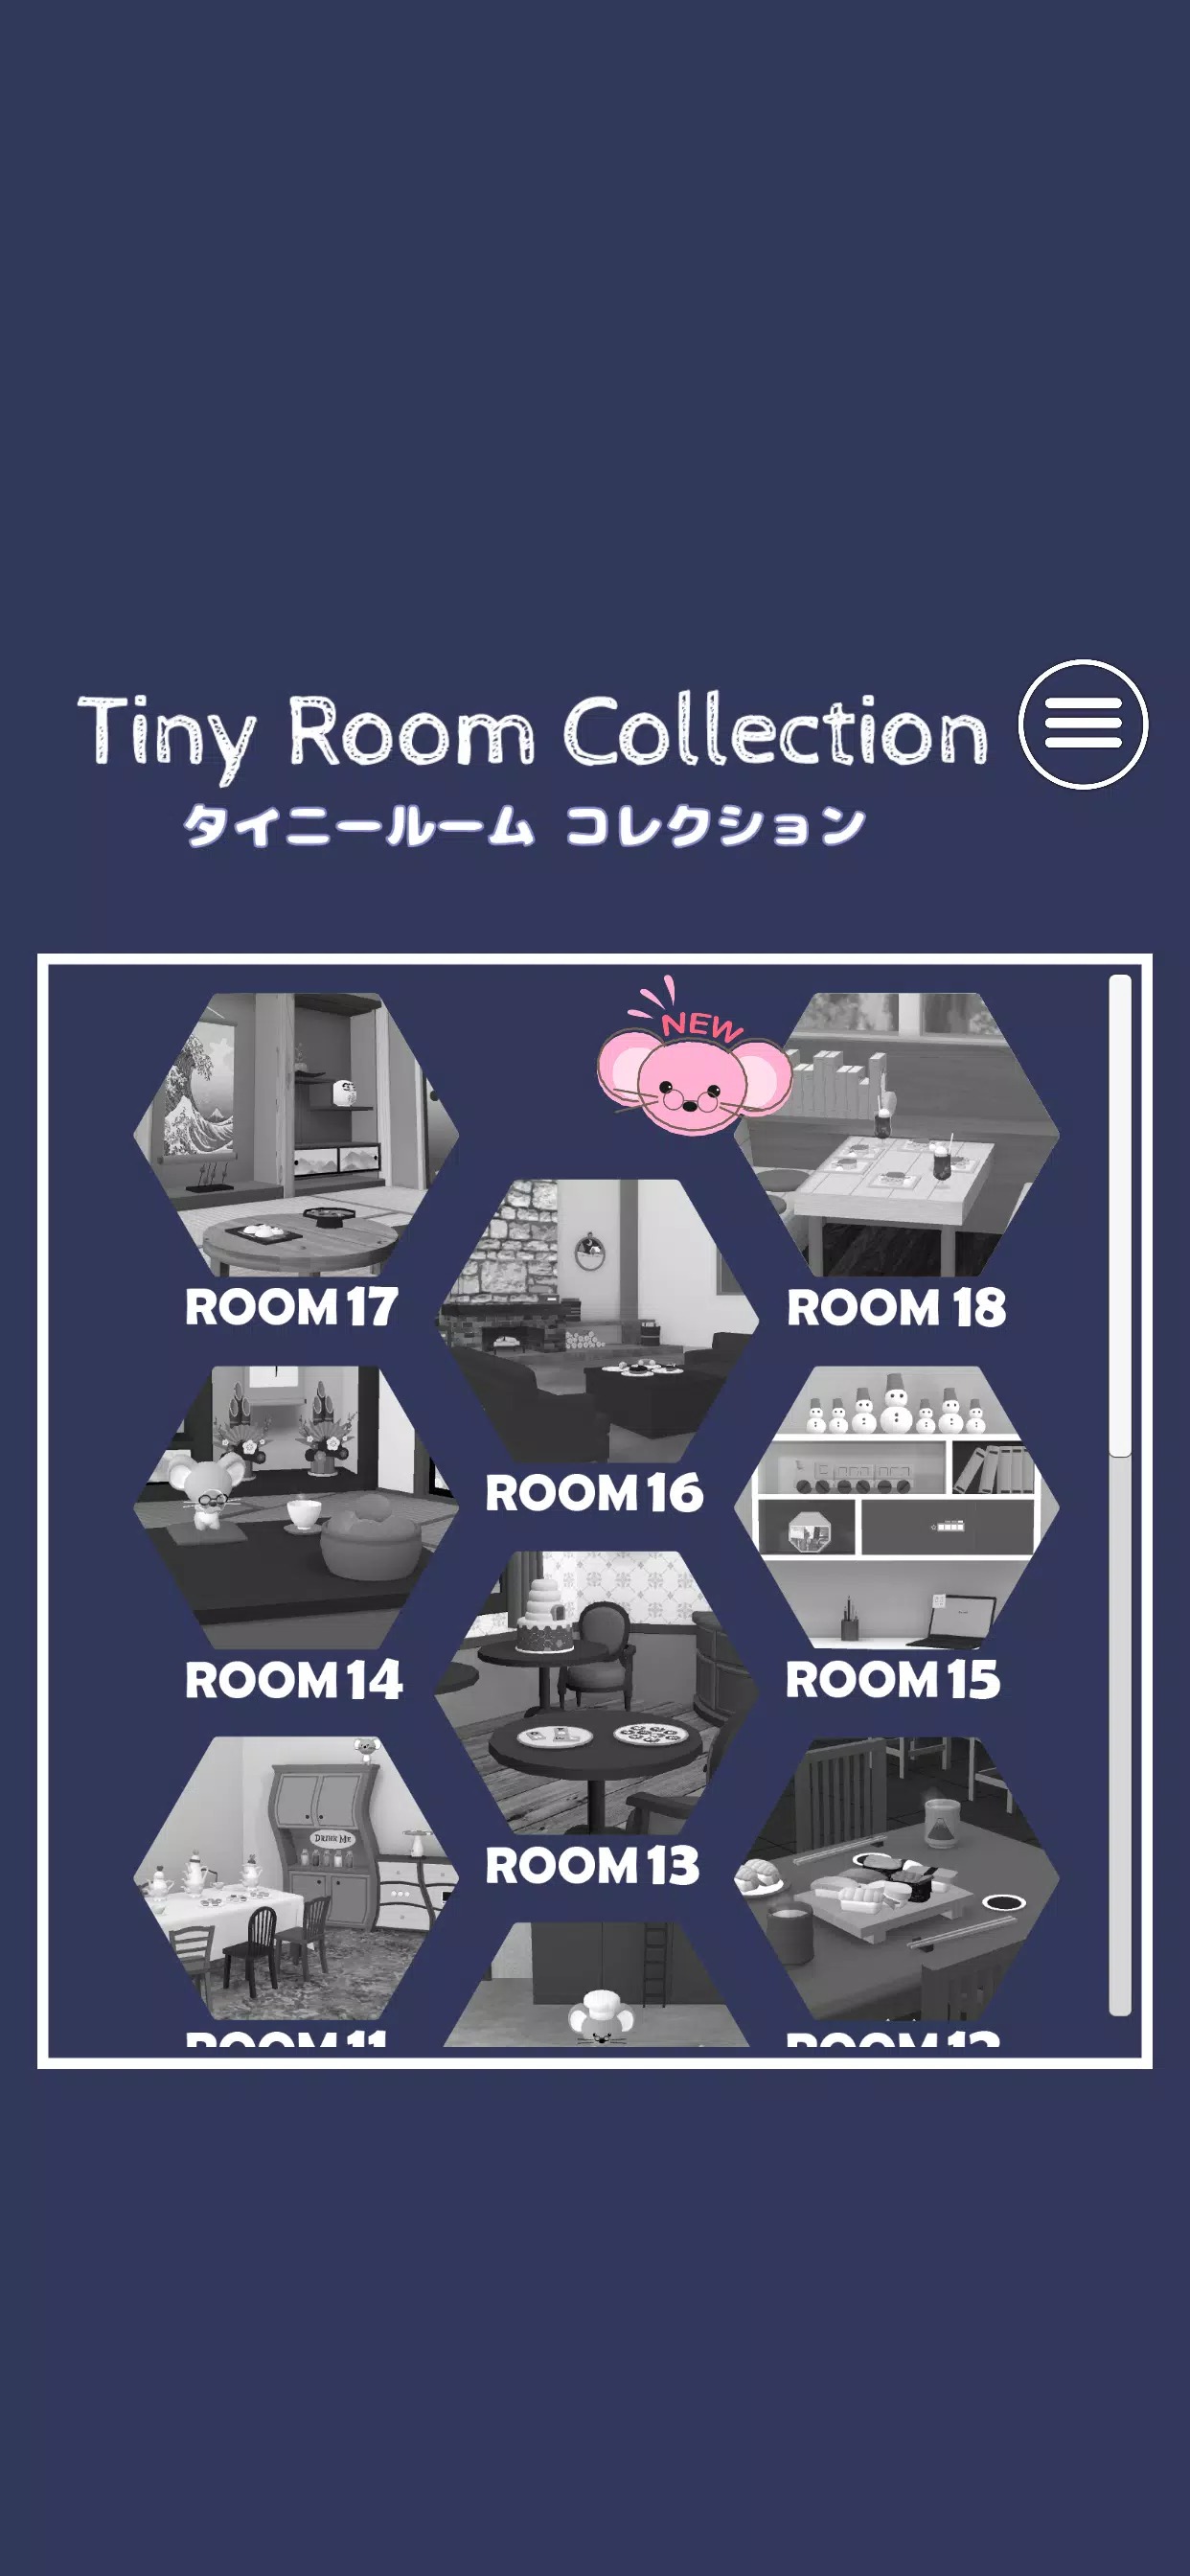 微型密室(Tiny Room)